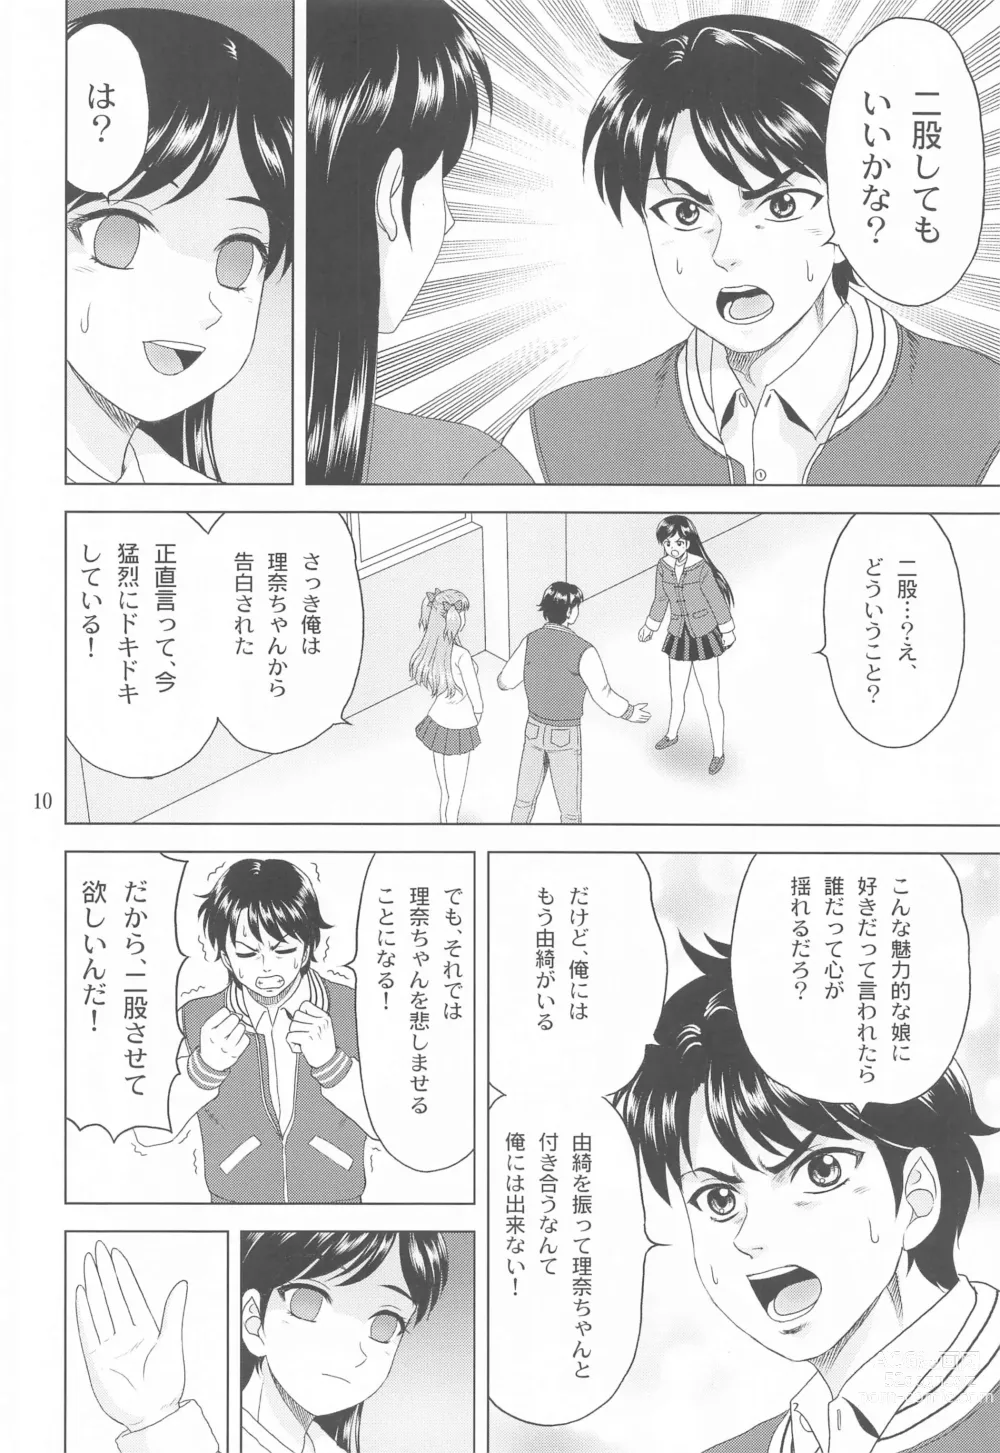 Page 9 of doujinshi Yuki mo Rina mo Kanojo